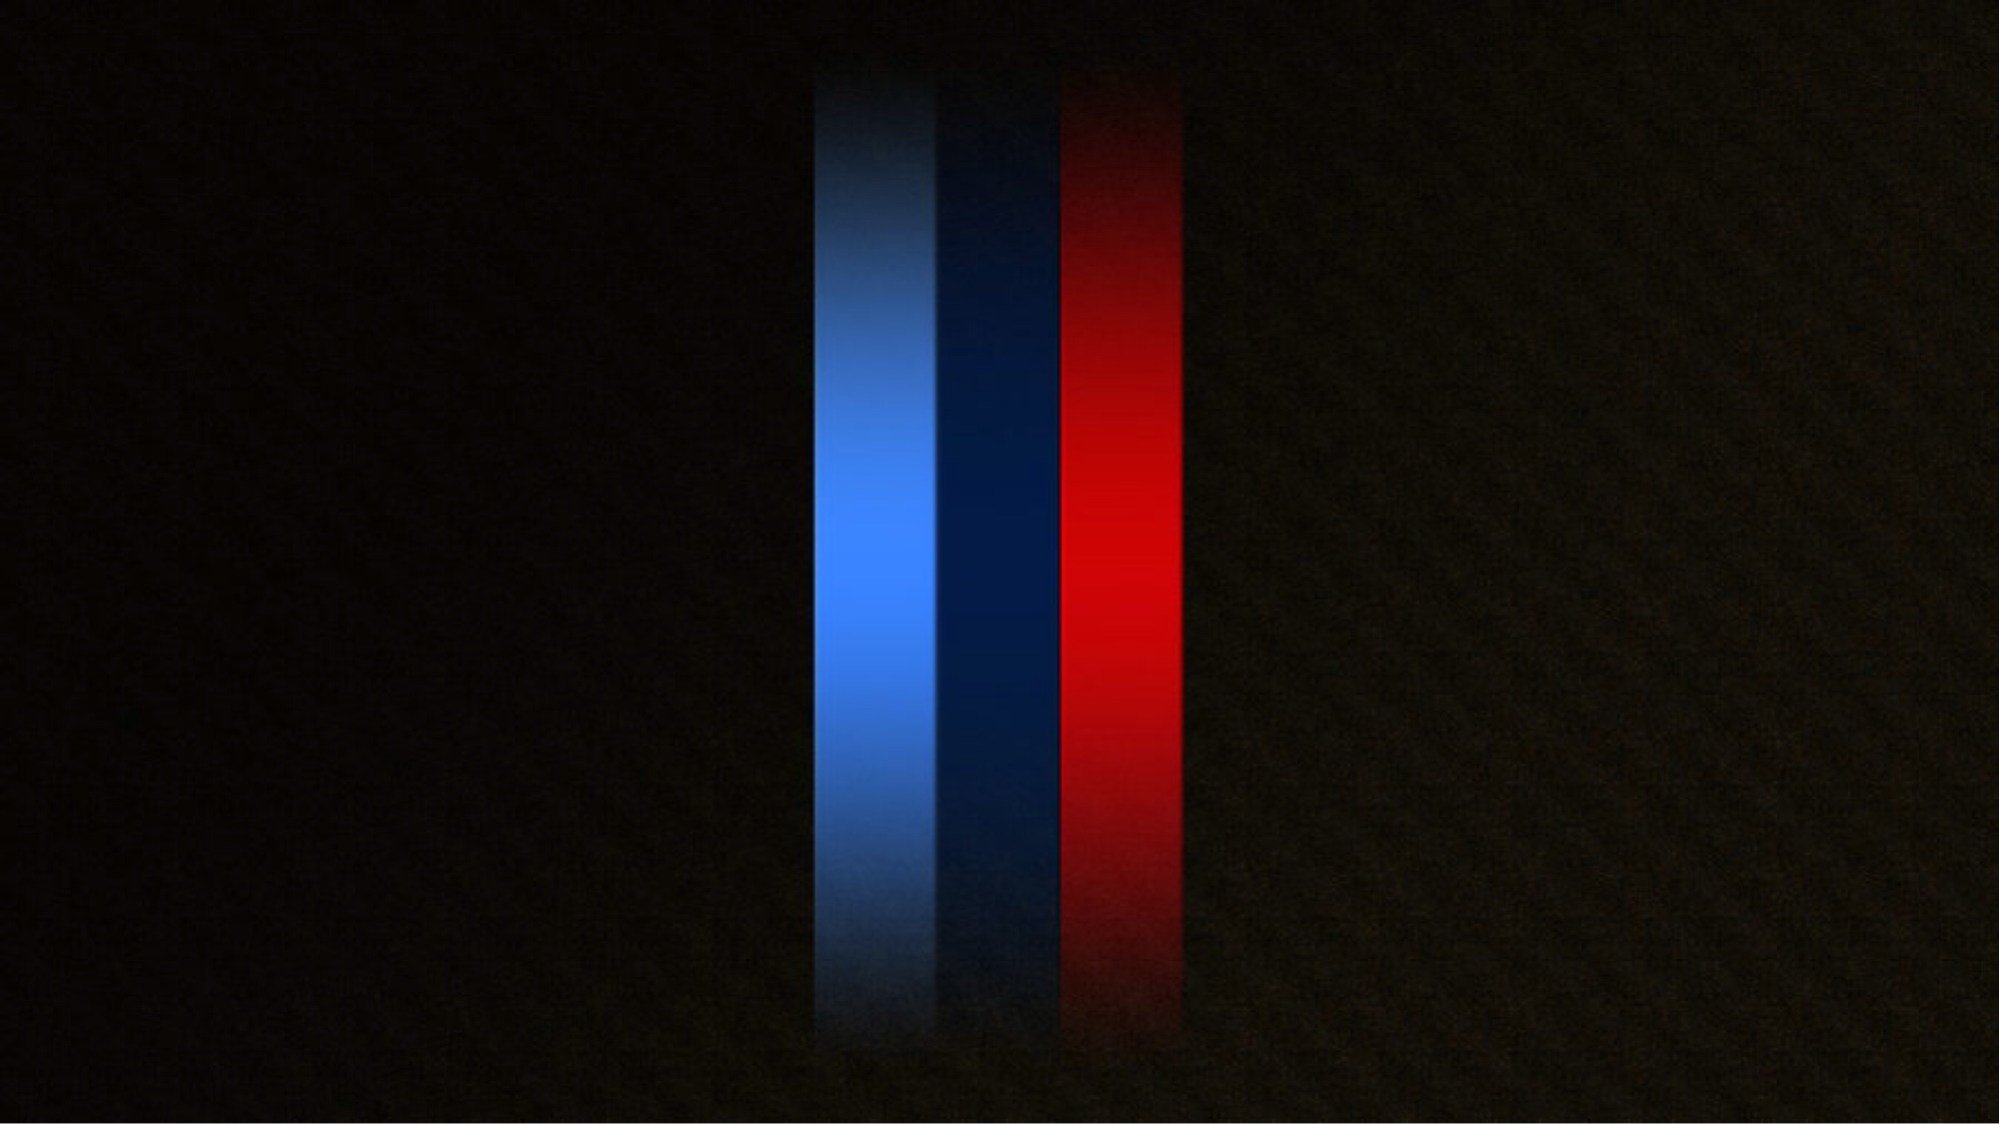 Обои 3 полоски. BMW M флаг. Логотип BMW M Power. Вертикальные полосы. БМВ М полоски.